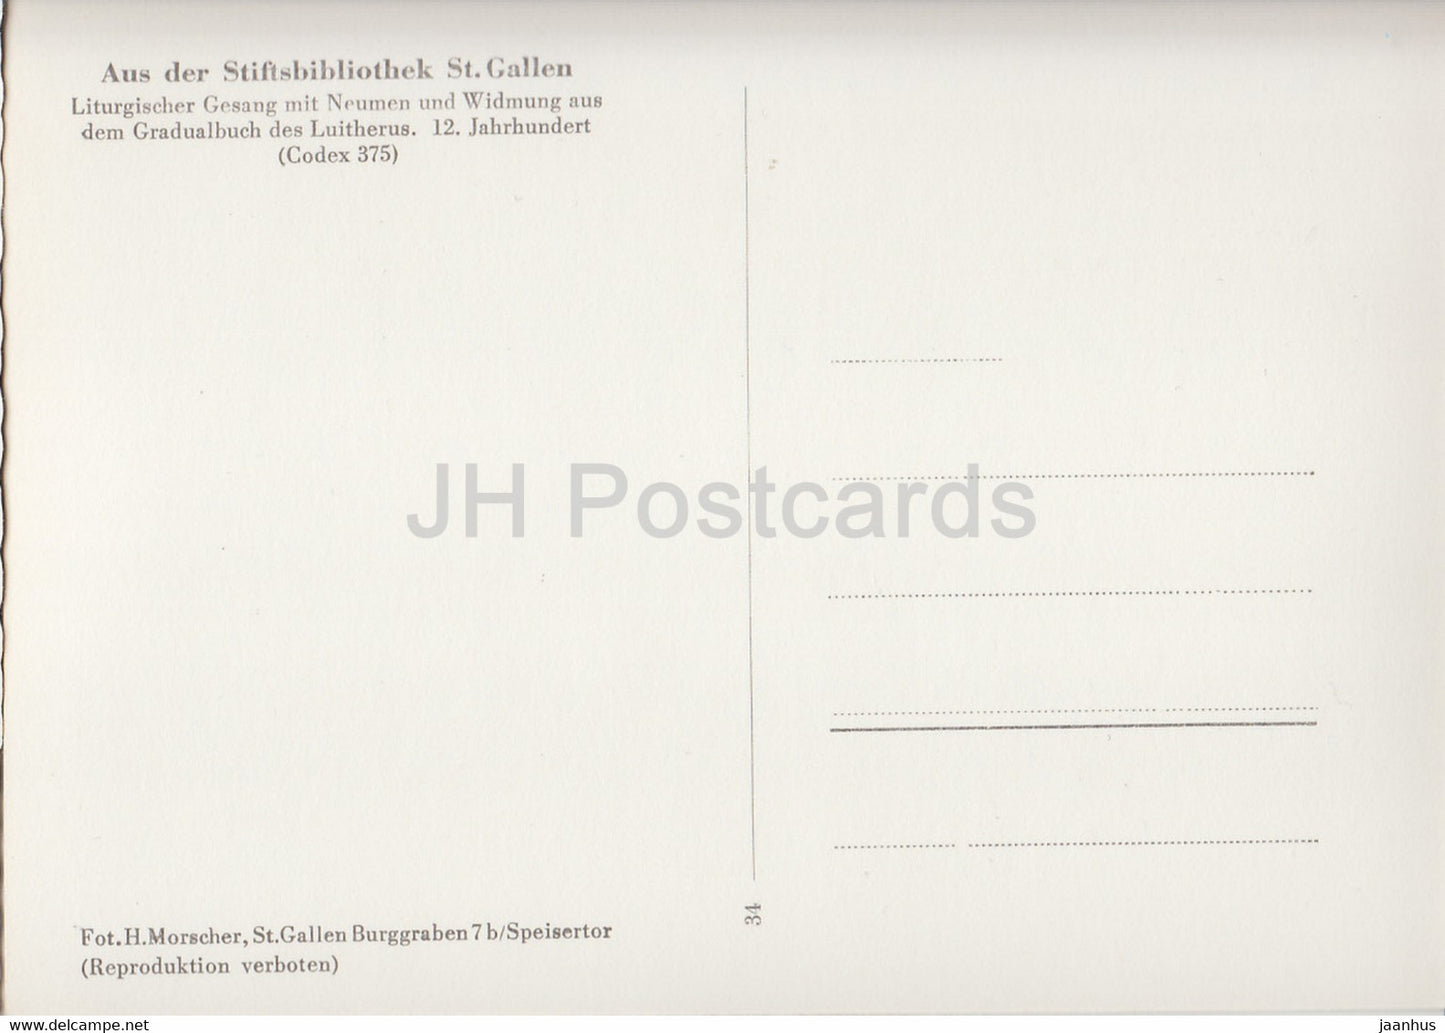 Liturgischer Gesang - Aus der Stiftsbibliothek St Gallen - library - 34 - old postcard - Switzerland - unused